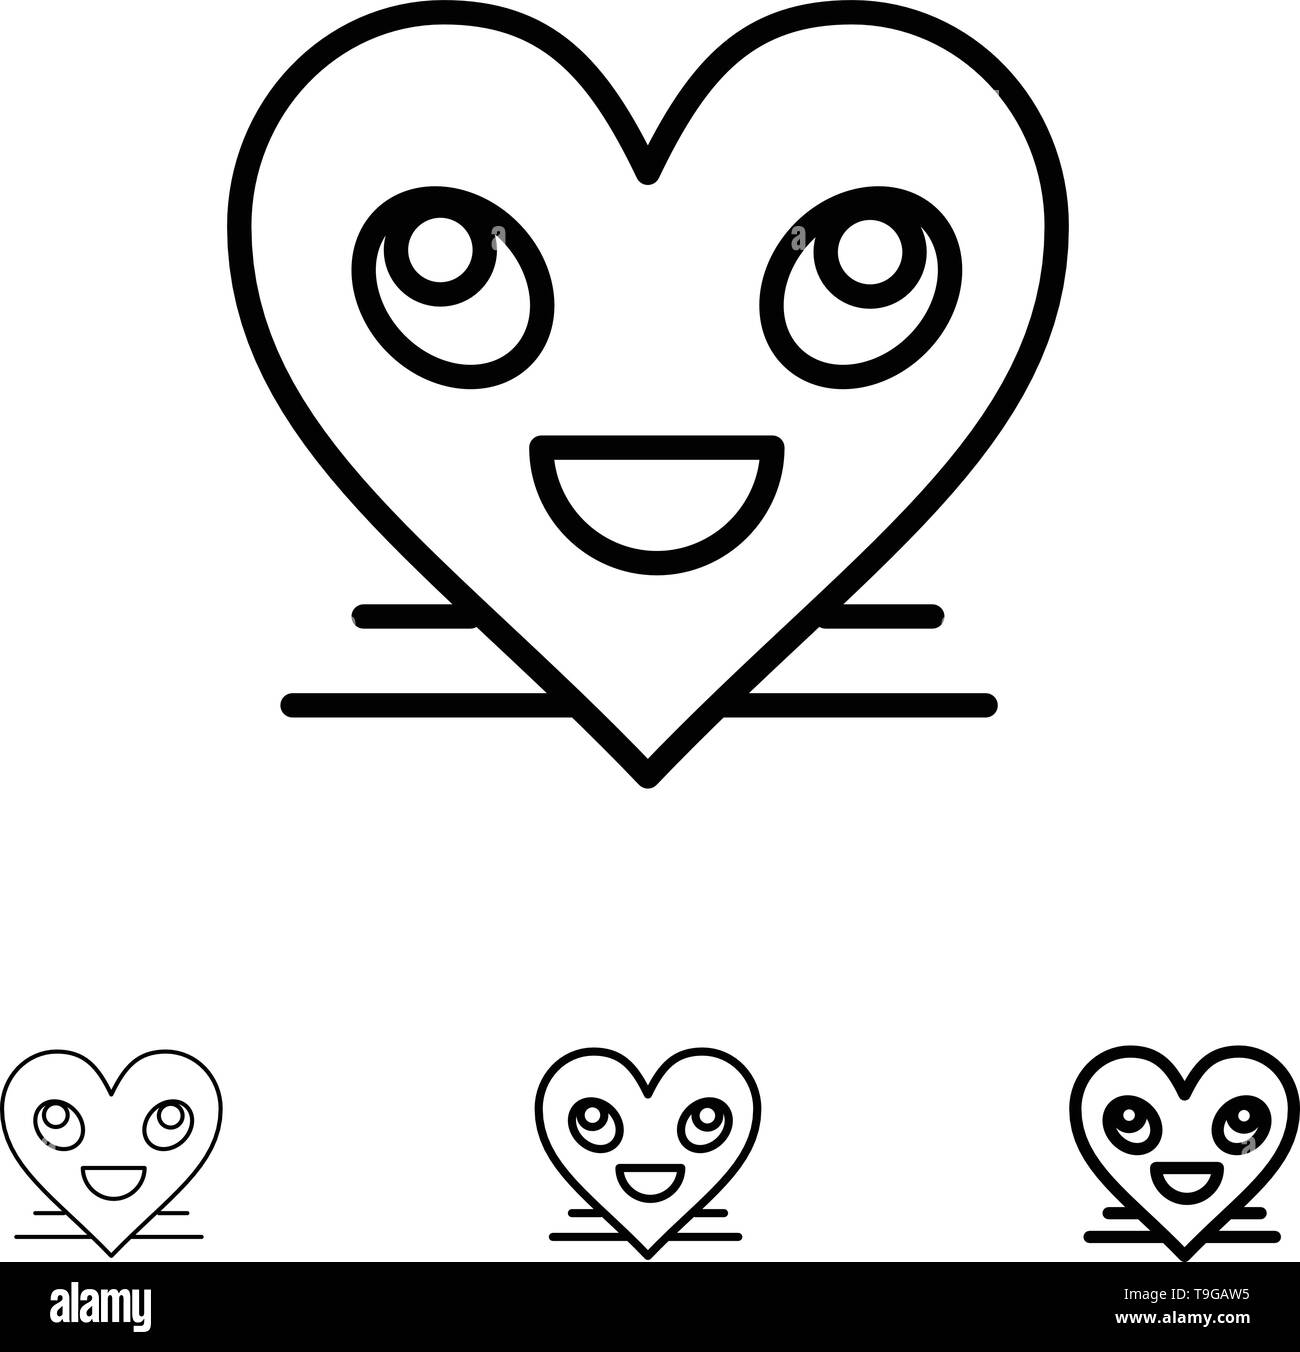 Cuore, Emojis, Smile, Volto, Smile Bold e la sottile linea nera icona impostare Illustrazione Vettoriale